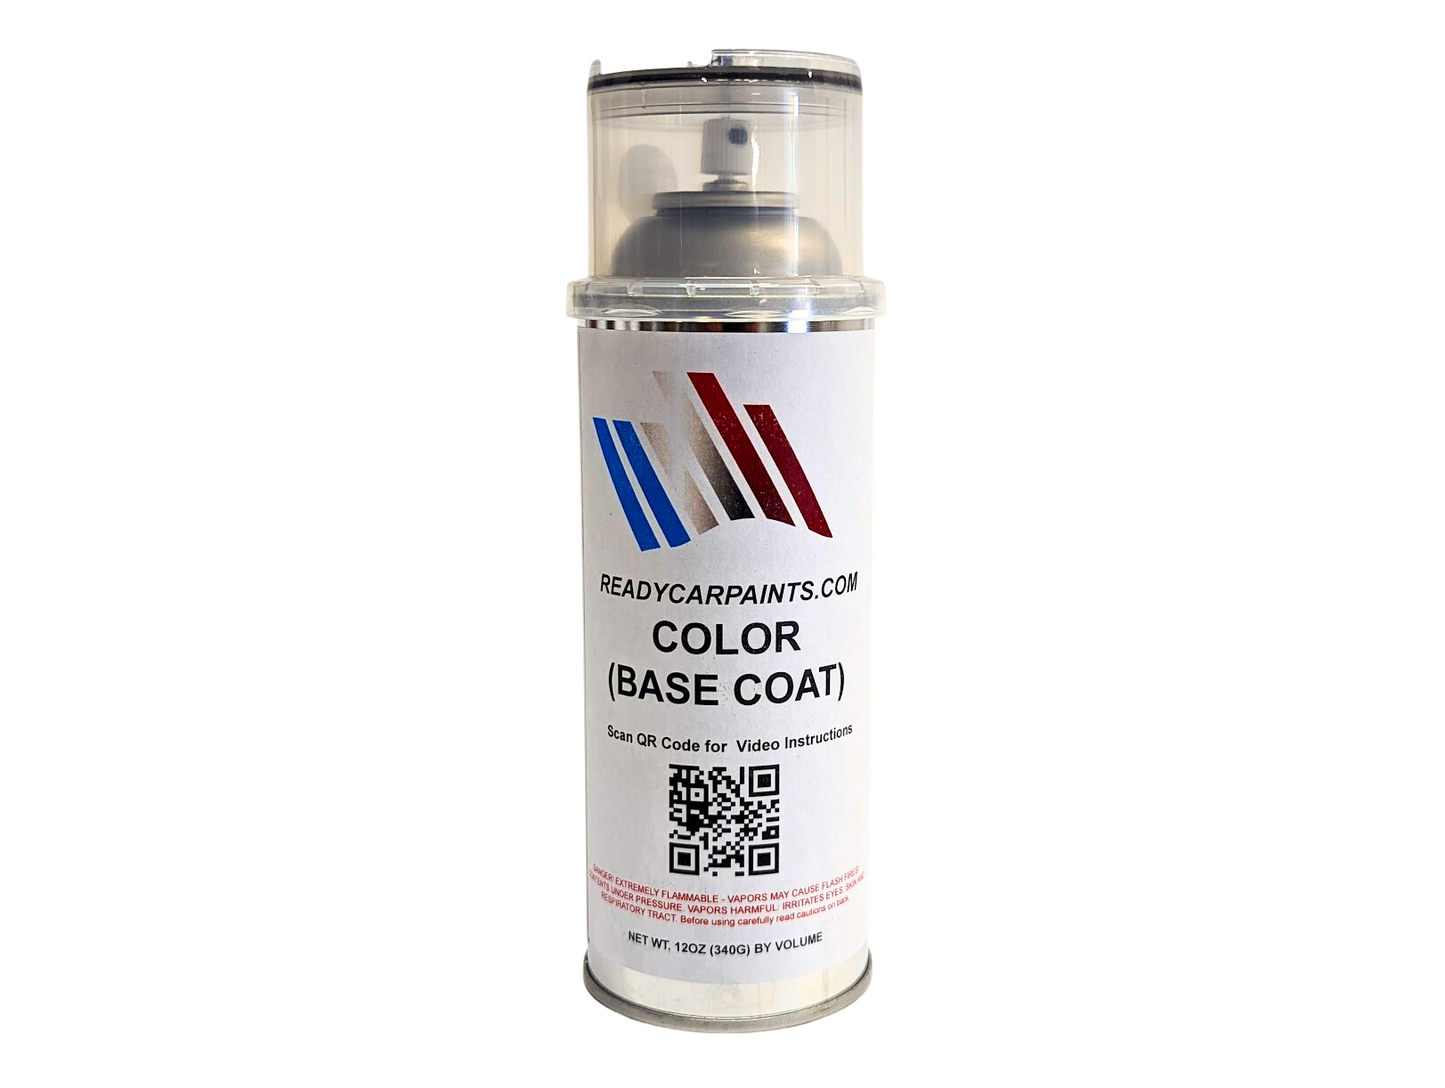 JAGUAR CBP/1BD/2206 Caldera Red Automotive Spray Paint 100% OEM Color Match